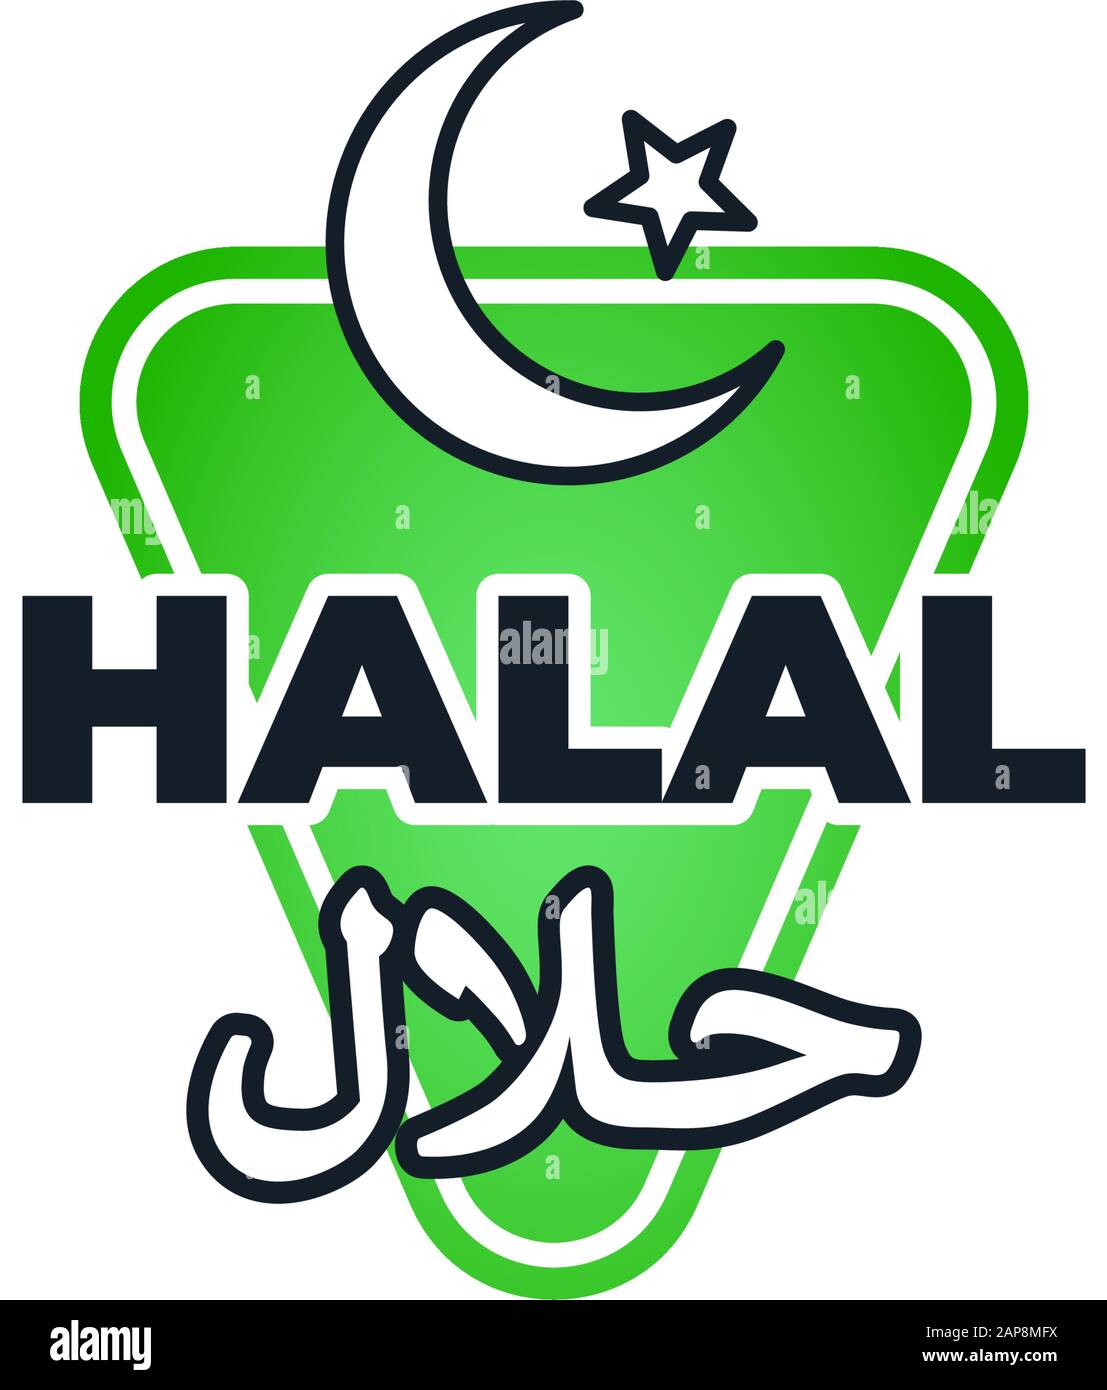 Etichetta certificata Halal. Cibo islam approvato con iscrizione arabica marketing tag. Prodotto certificato dietetico emblema verde con luna crescente e stella. Immagine piatta vettoriale Illustrazione Vettoriale